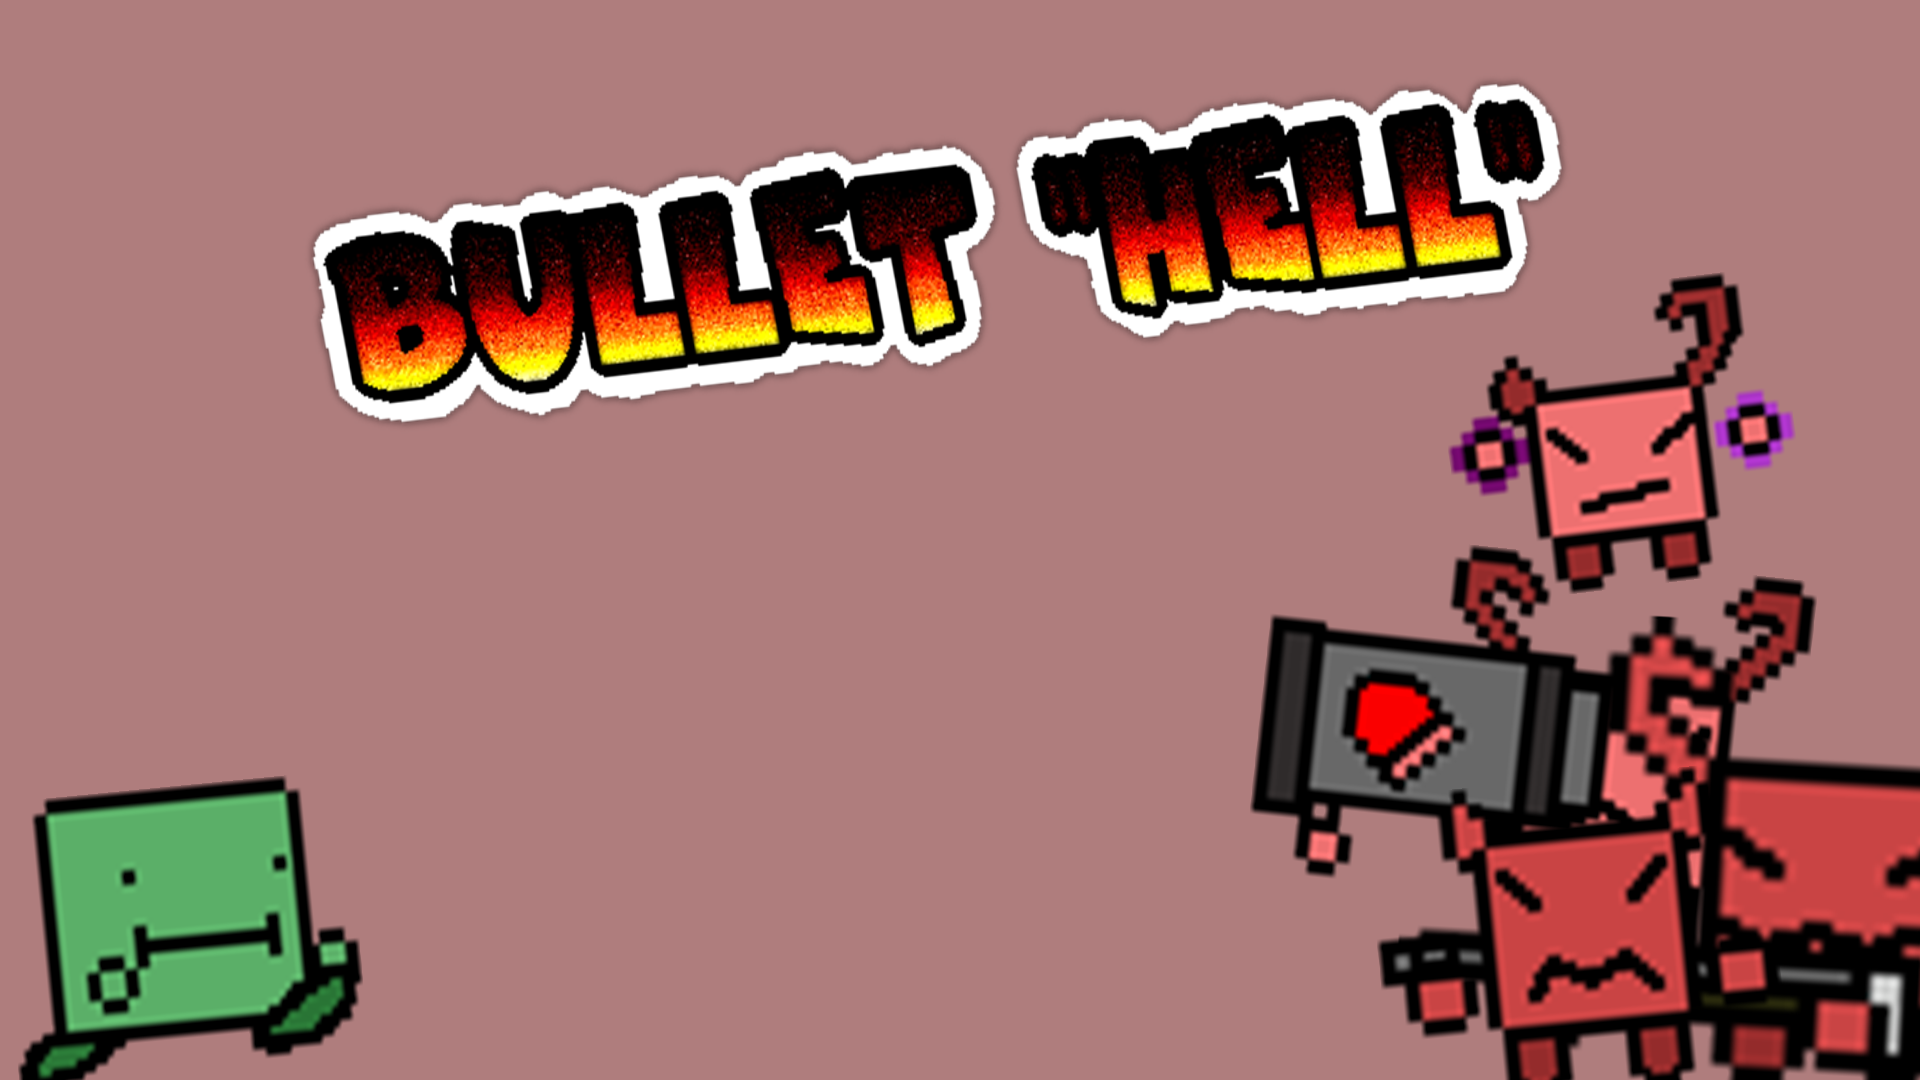 Bullet "Hell"